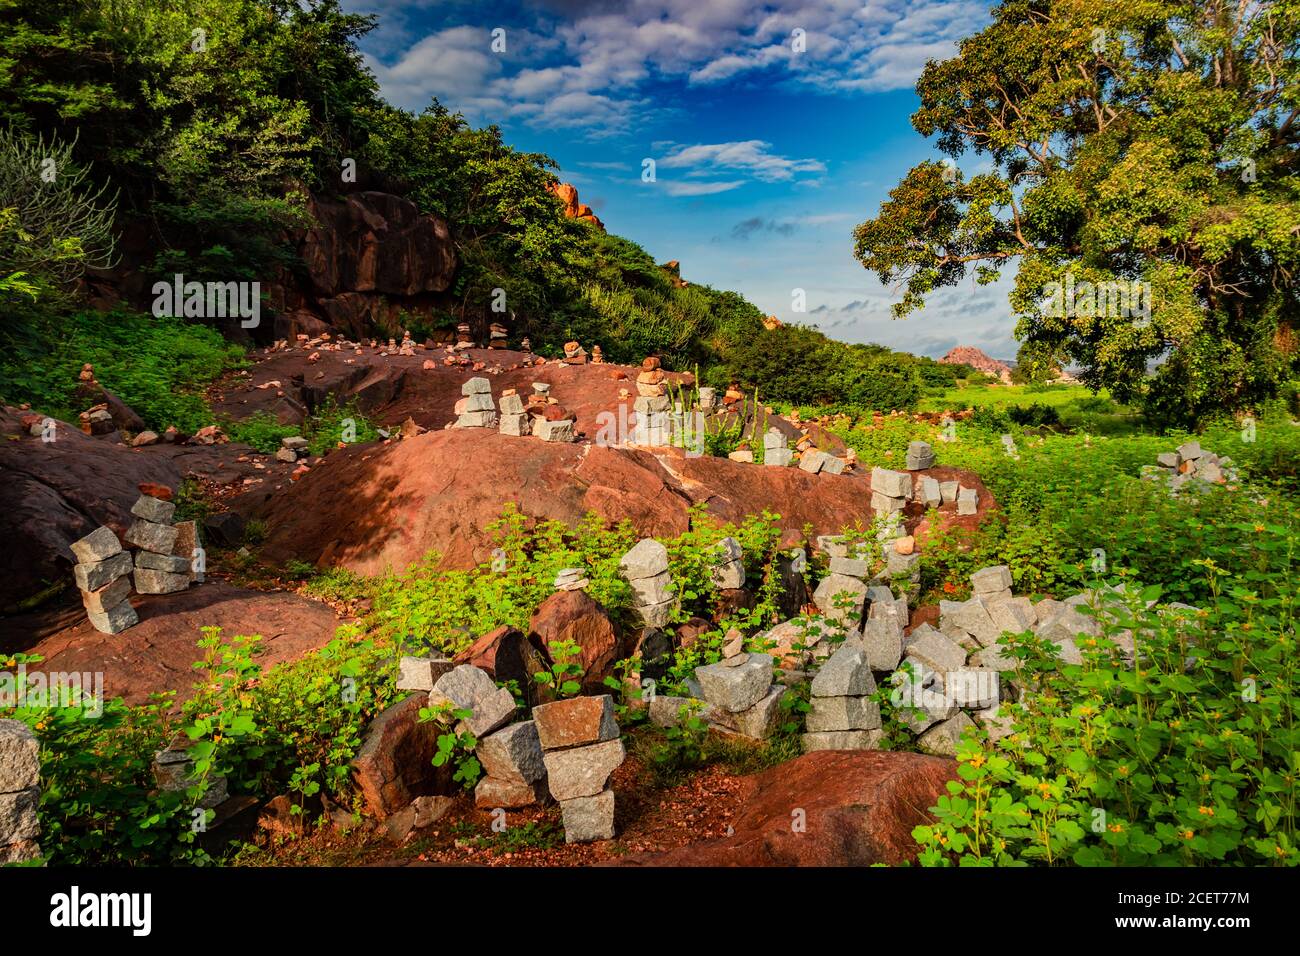 pyramid of pebbles or stones at hampi ruins ancient city image is taken at hampi karnataka india. Stock Photo